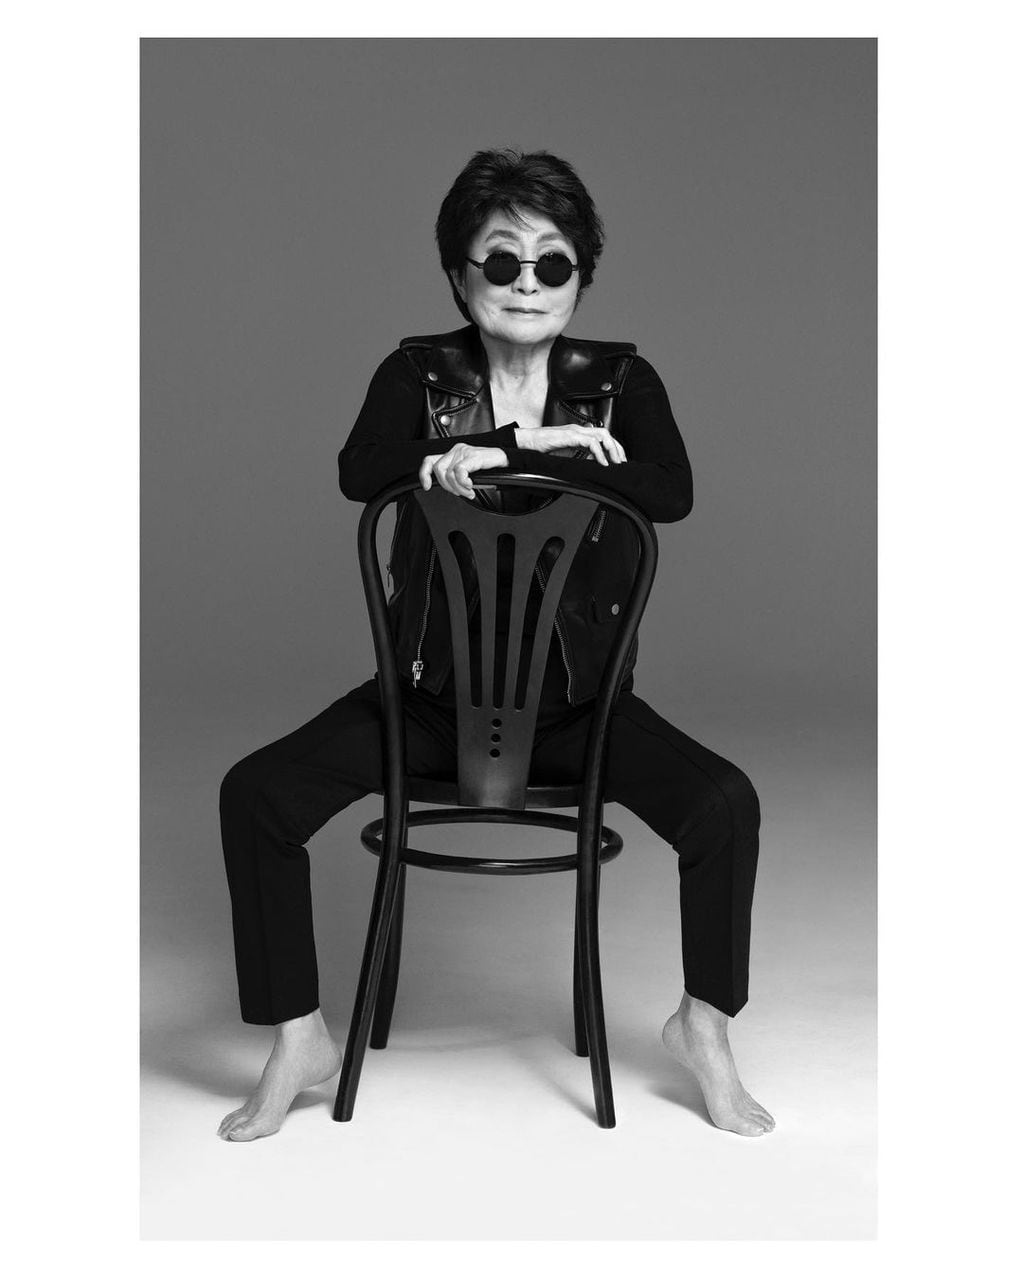 La artista vanguardista y mujer de john Lennon cumple 90 años